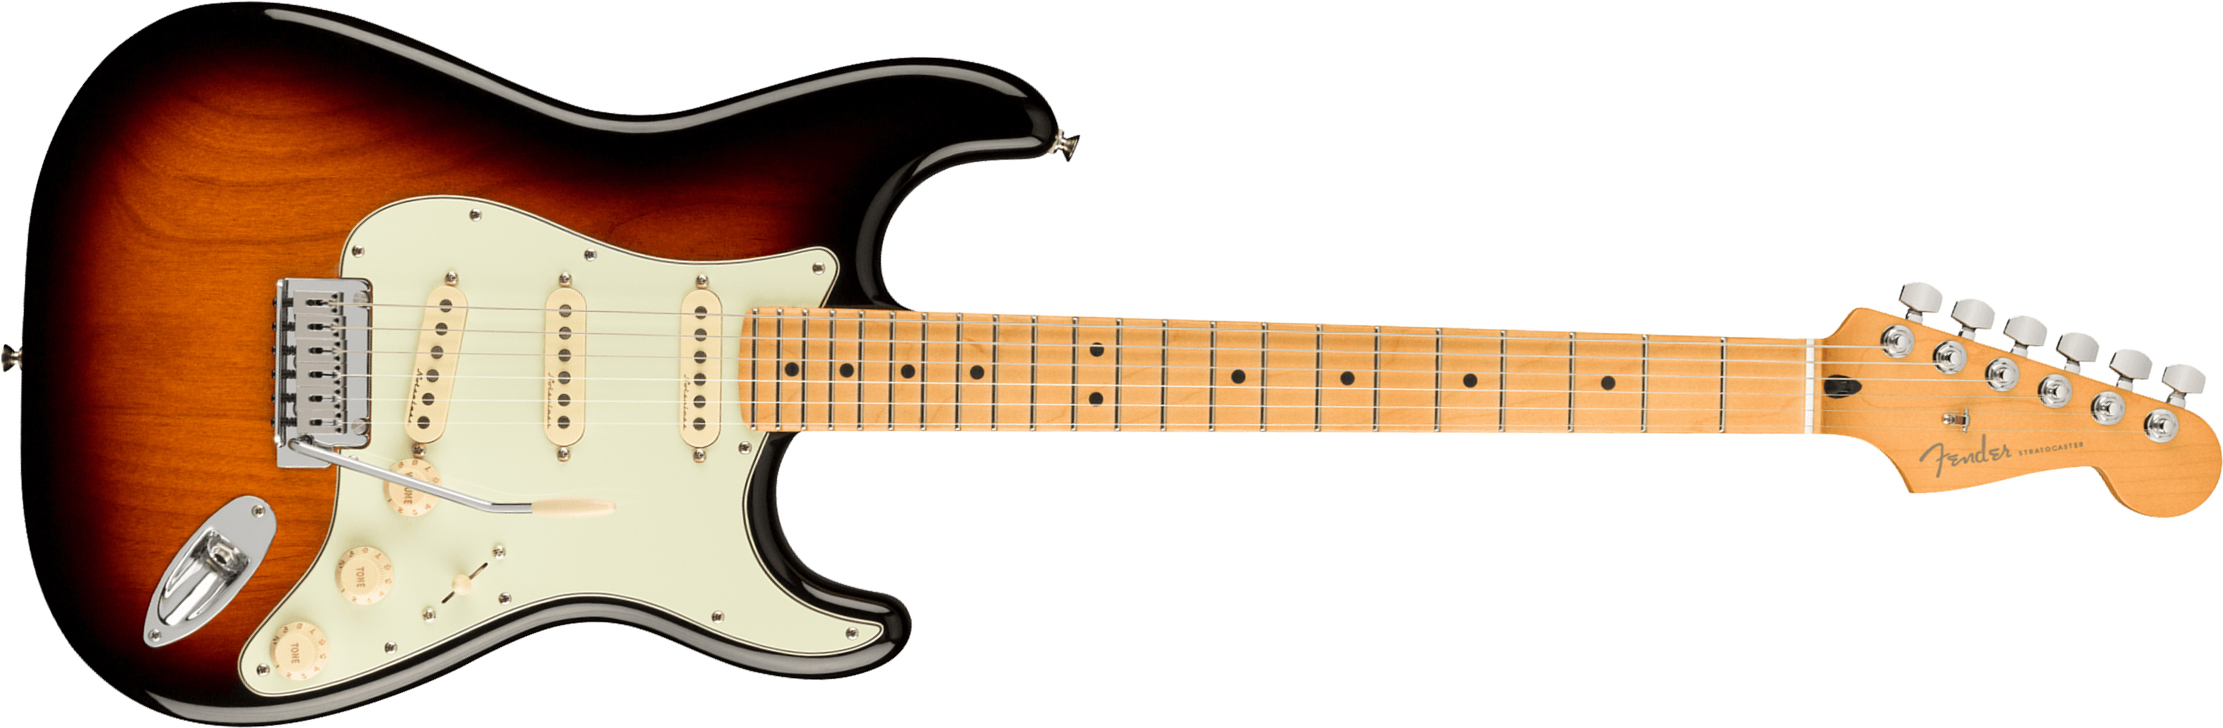 Fender Strat Player Plus Mex 3s Trem Mn - 3-color Sunburst - Str shape electric guitar - Main picture